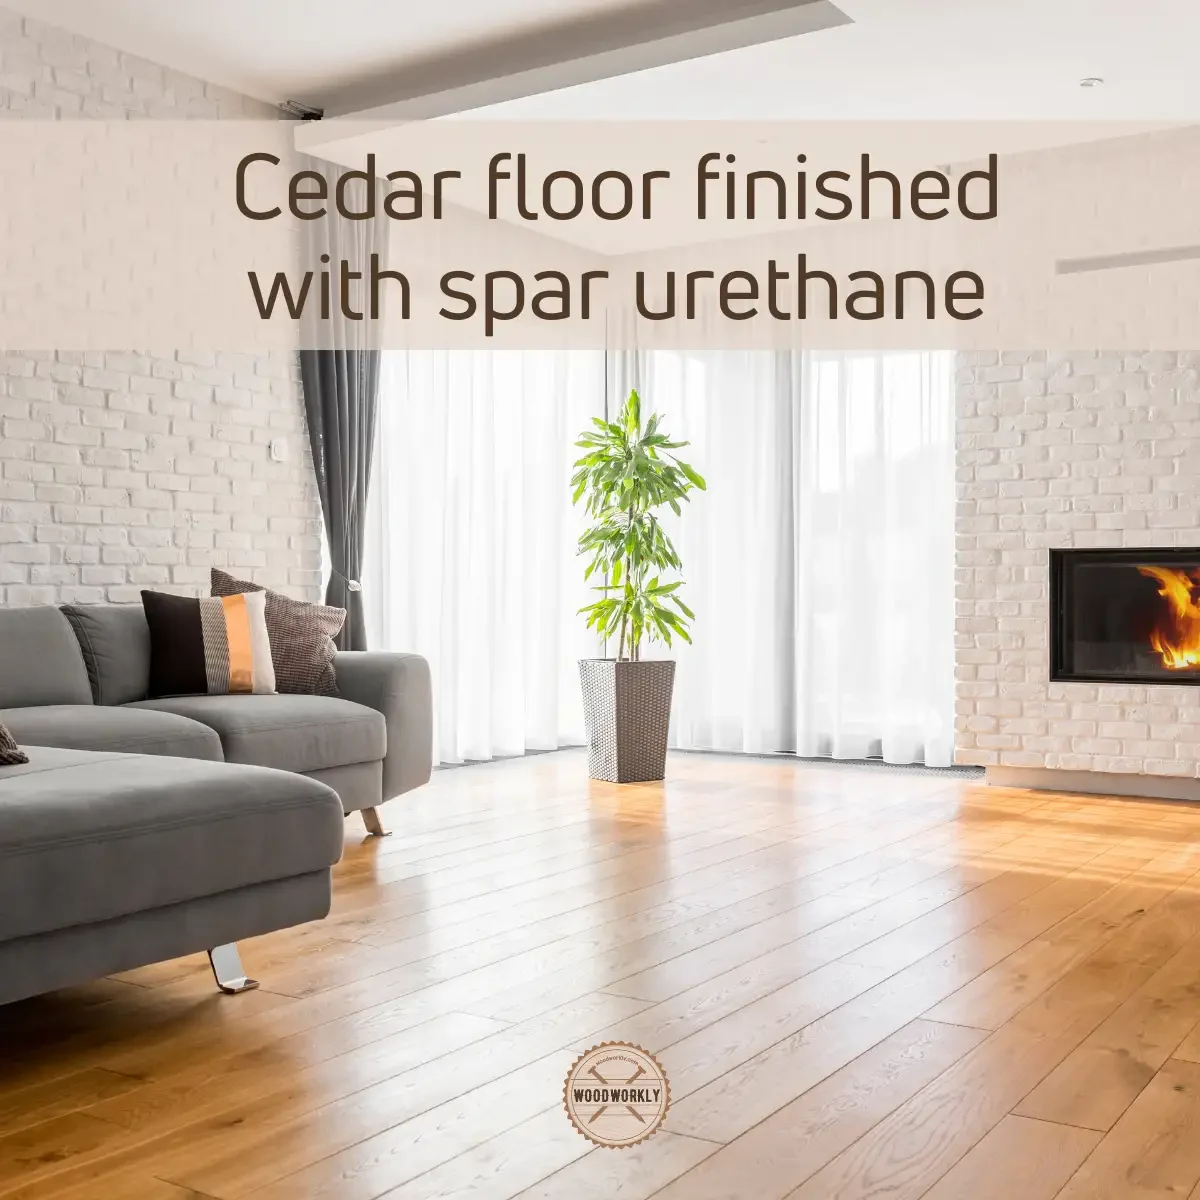 cedar floor finished with spar urethane